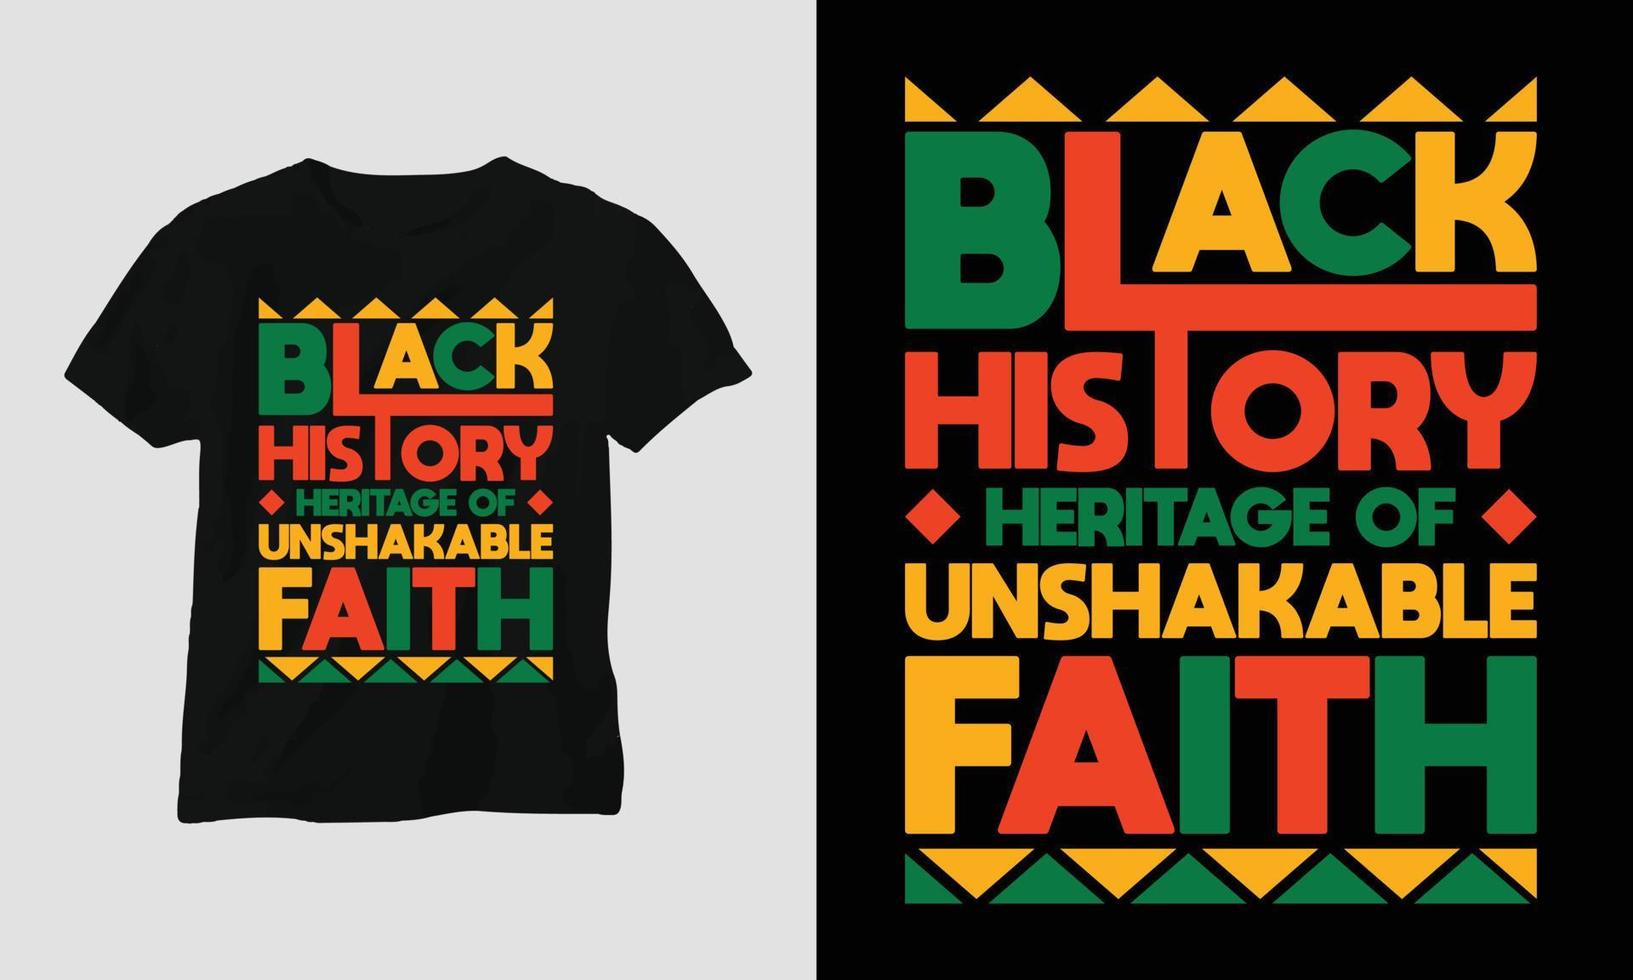 schwarzes Geschichtserbe des unerschütterlichen Glaubens - schwarzes Geschichtsmonatst-shirt vektor